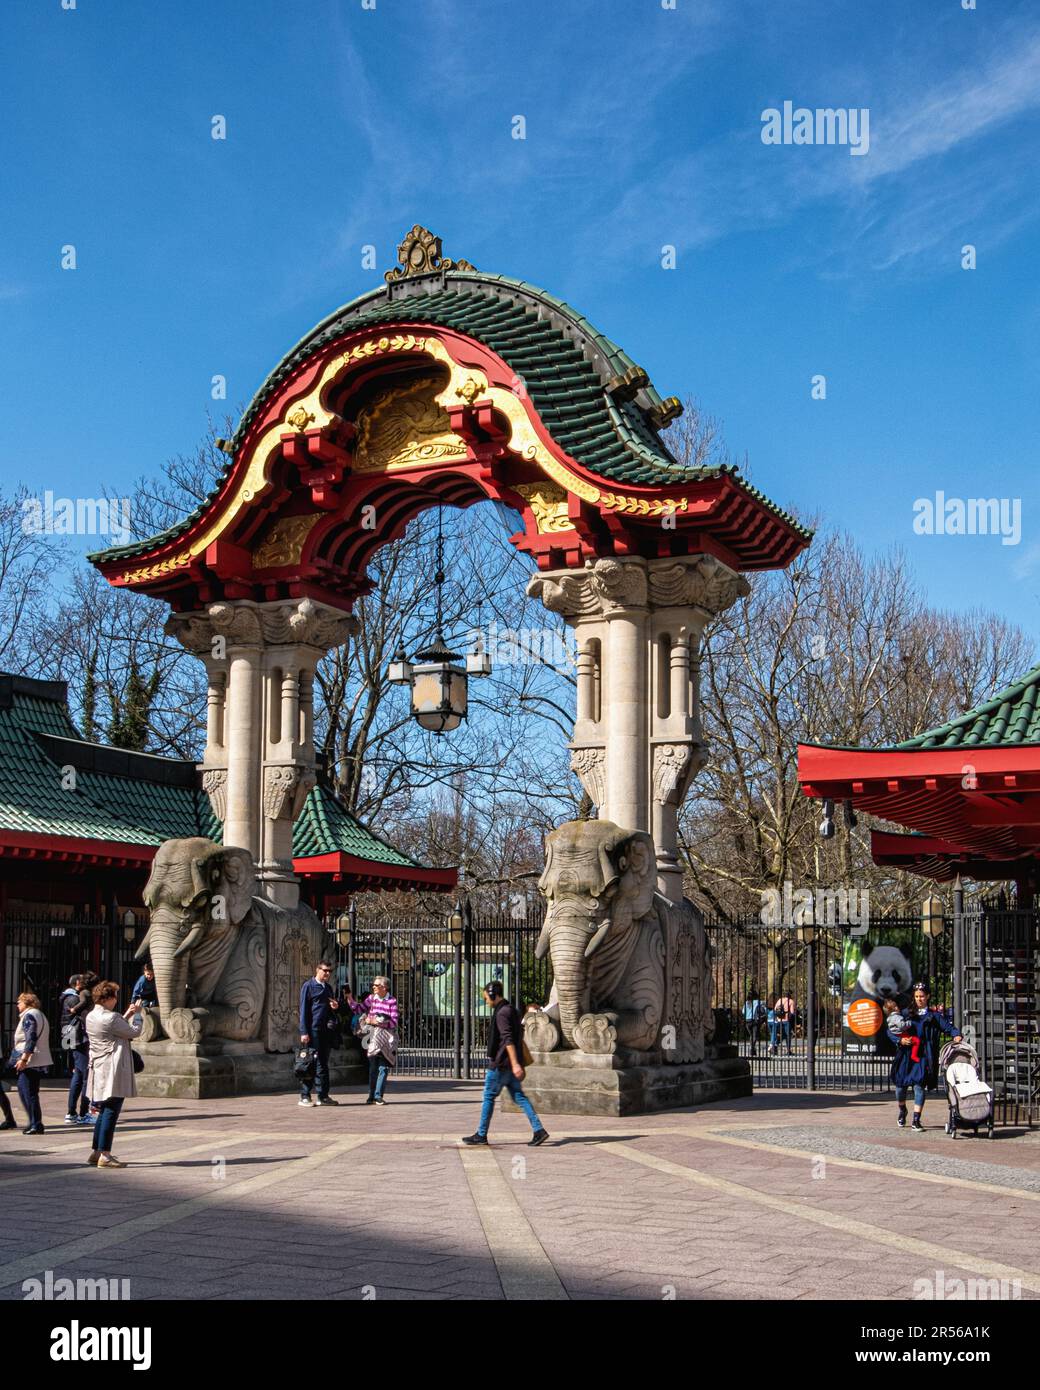 Eingang zum Elefantentor Zoo, Pagodendach, goldene Skulpturen und grün verglaste Fliesen, Budapester straße, Tiergarten, Mitte, Berlin Stockfoto